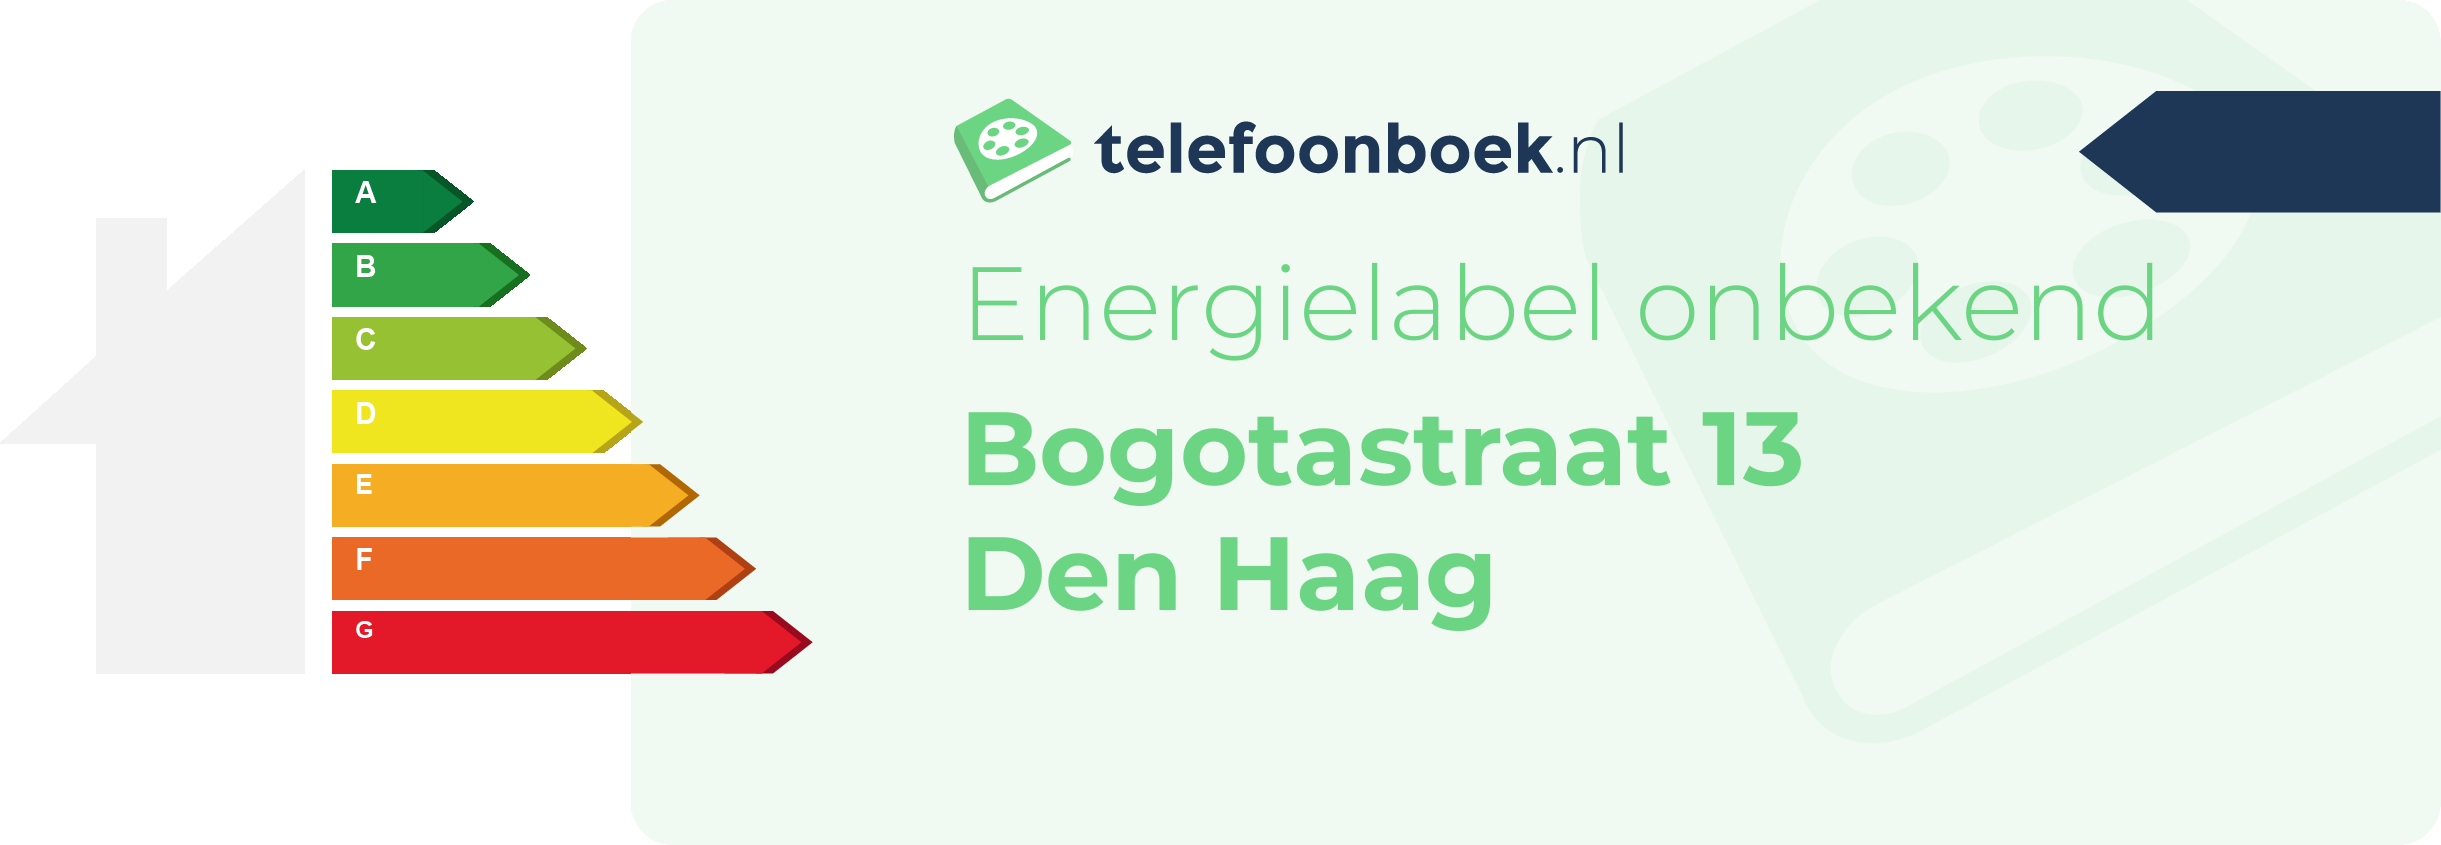 Energielabel Bogotastraat 13 Den Haag